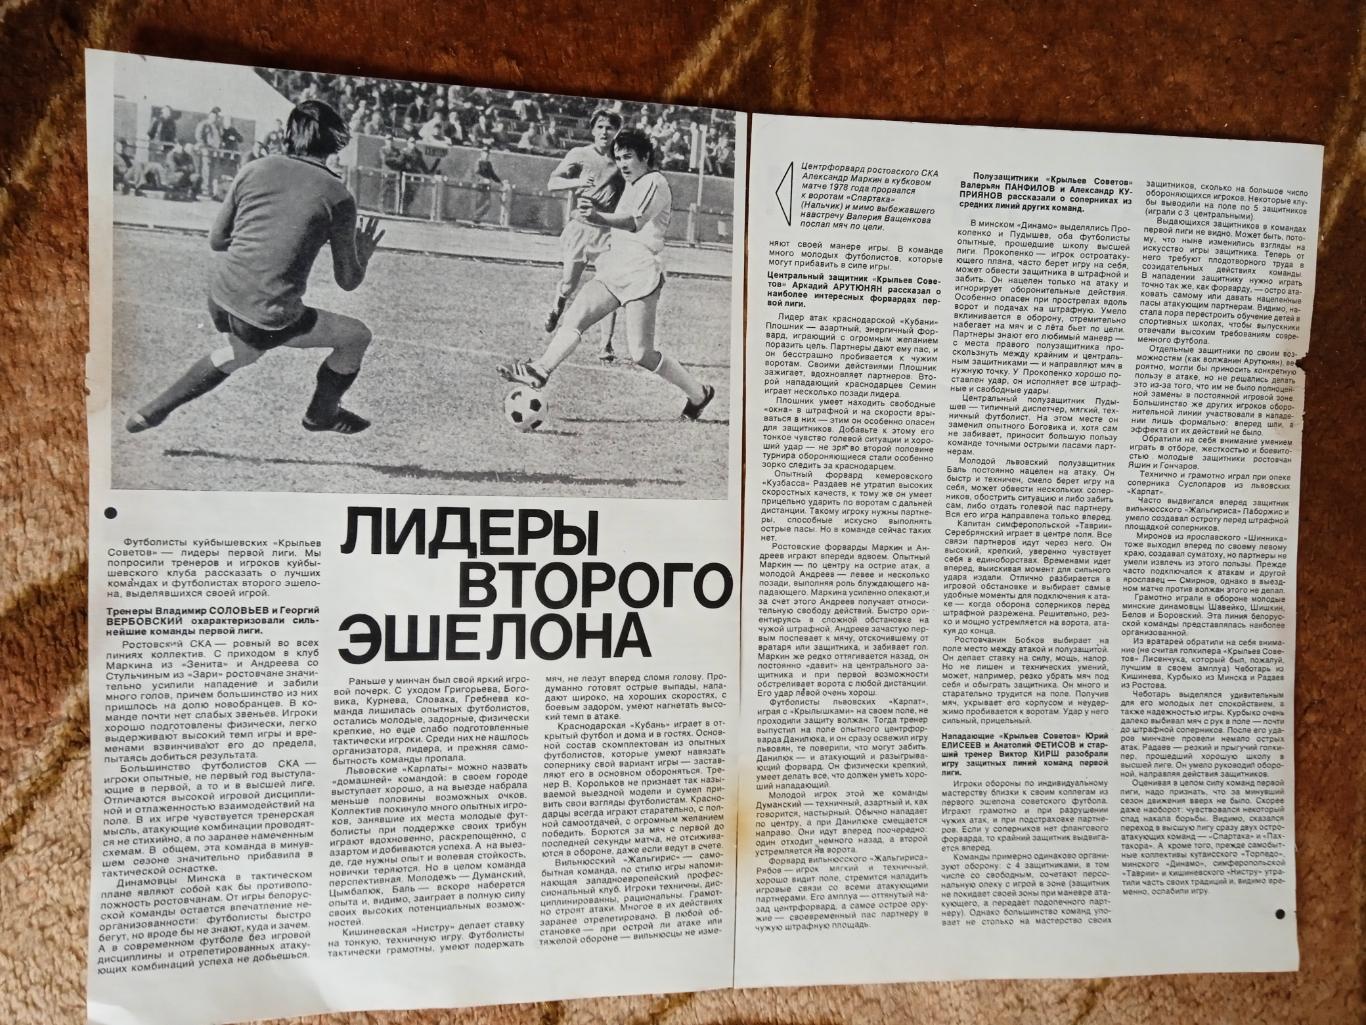 Статья.Фото.Футбол.Лидеры второго эшелона.Журнал СИ 1978.